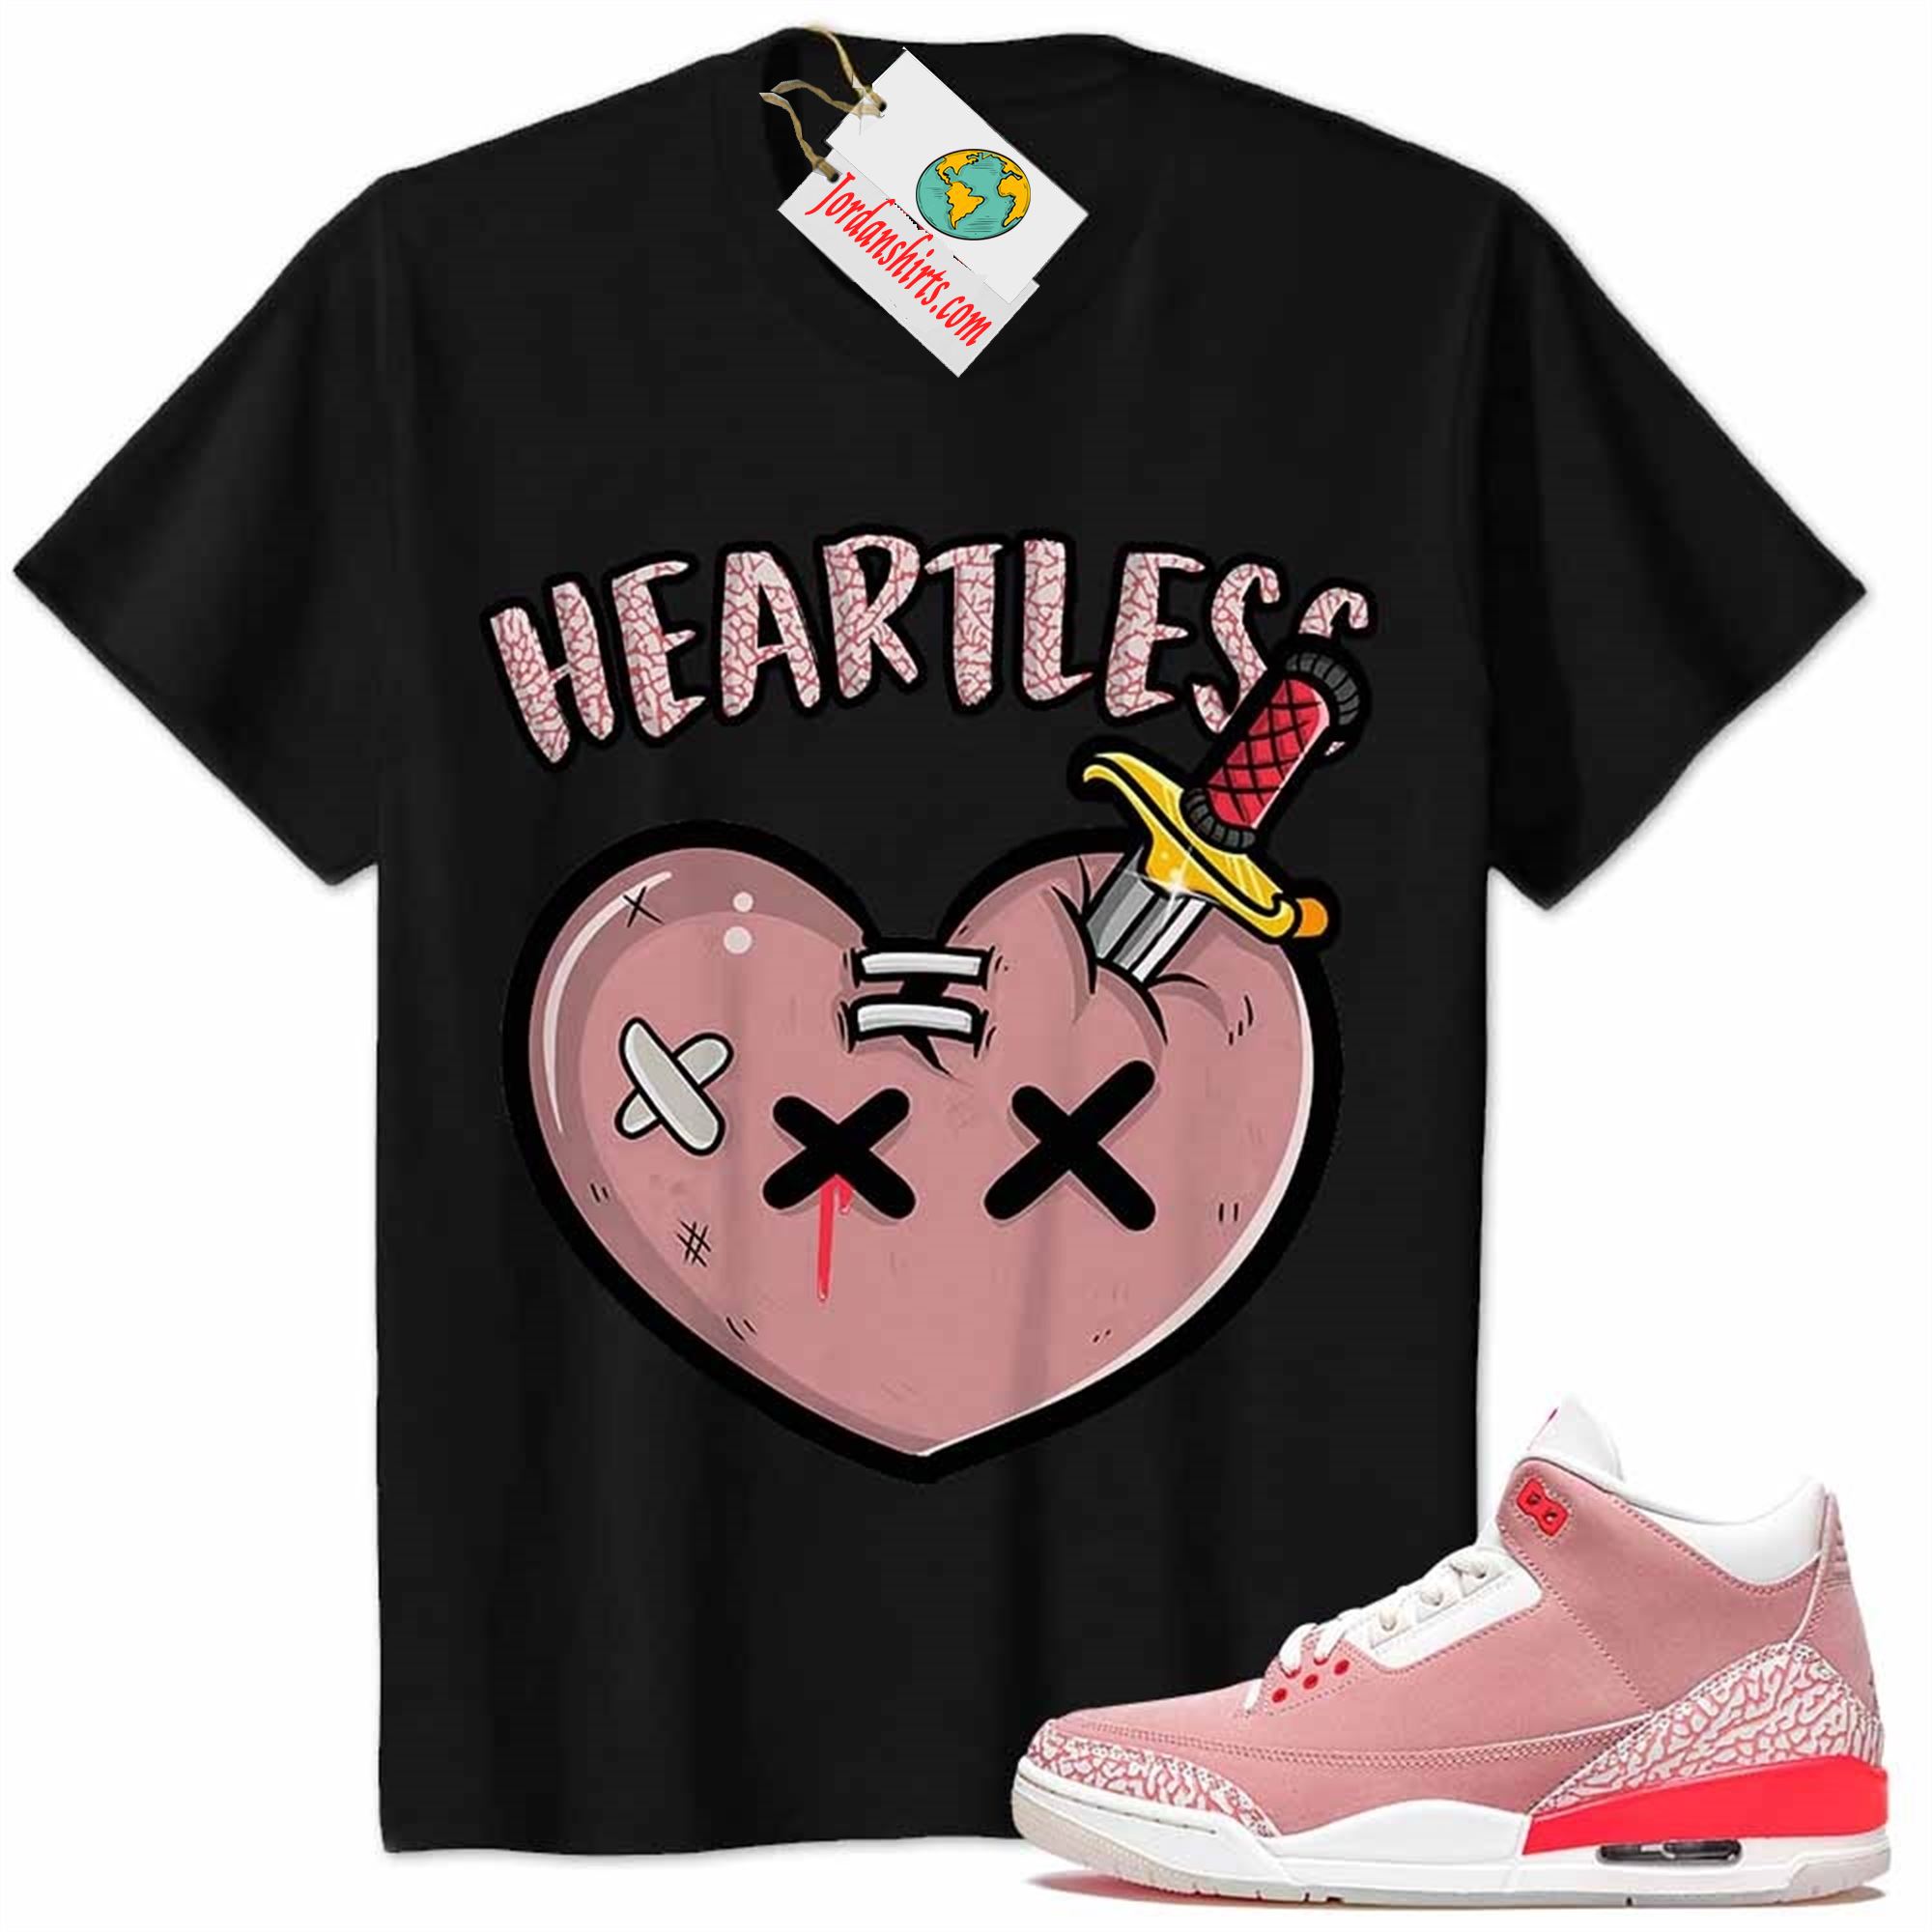 Jordan 3 Shirt, Crying Heart Heartless Black Air Jordan 3 Rust Pink 3s Size Up To 5xl